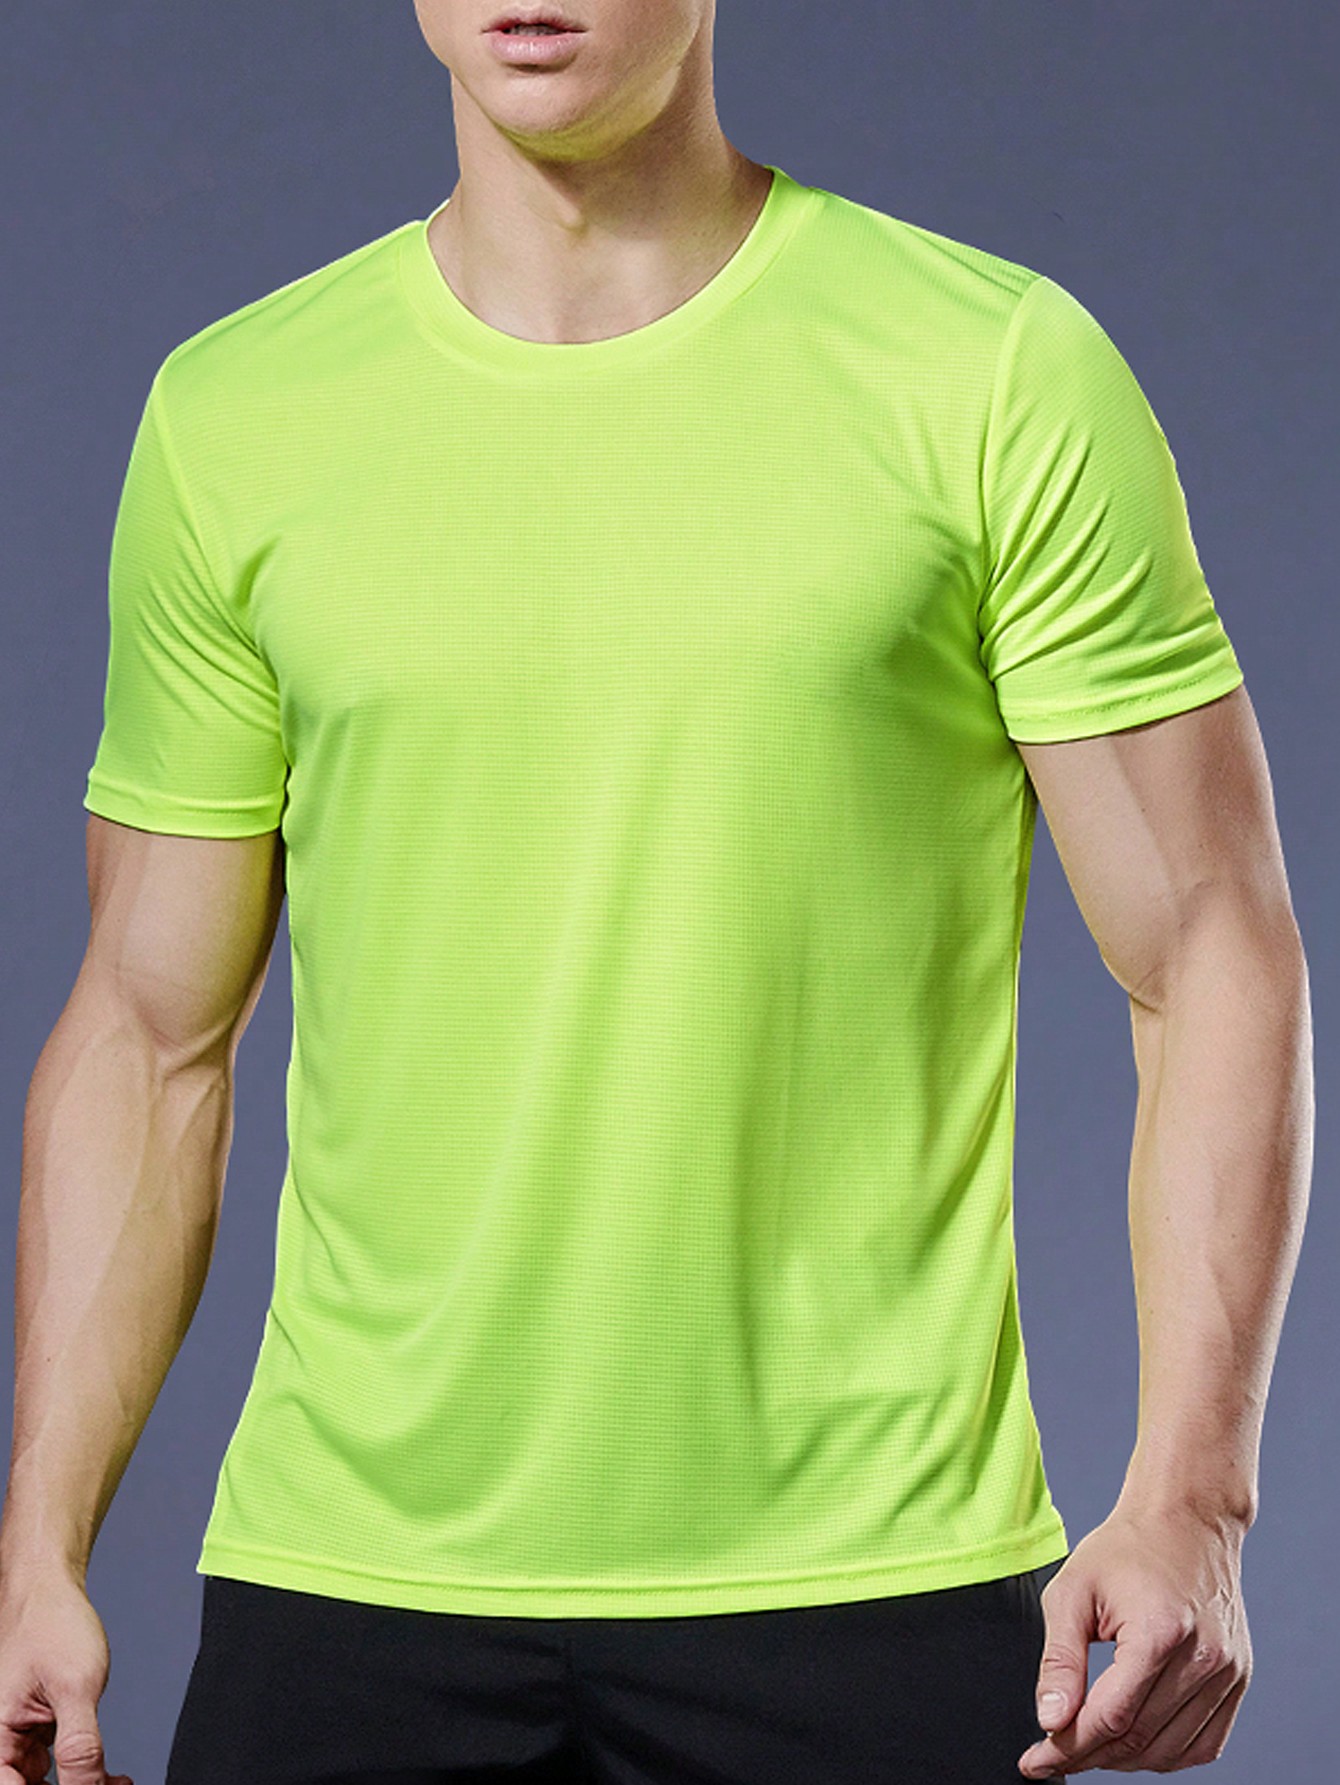 2 шт. комплект свободных футболок с короткими рукавами для тренировок и бега для мужчин, зеленый 1 шт спортивный компрессионный рукав до икры поддержка голени защита ног защитный носок для баскетбола бега велоспорта путешествий